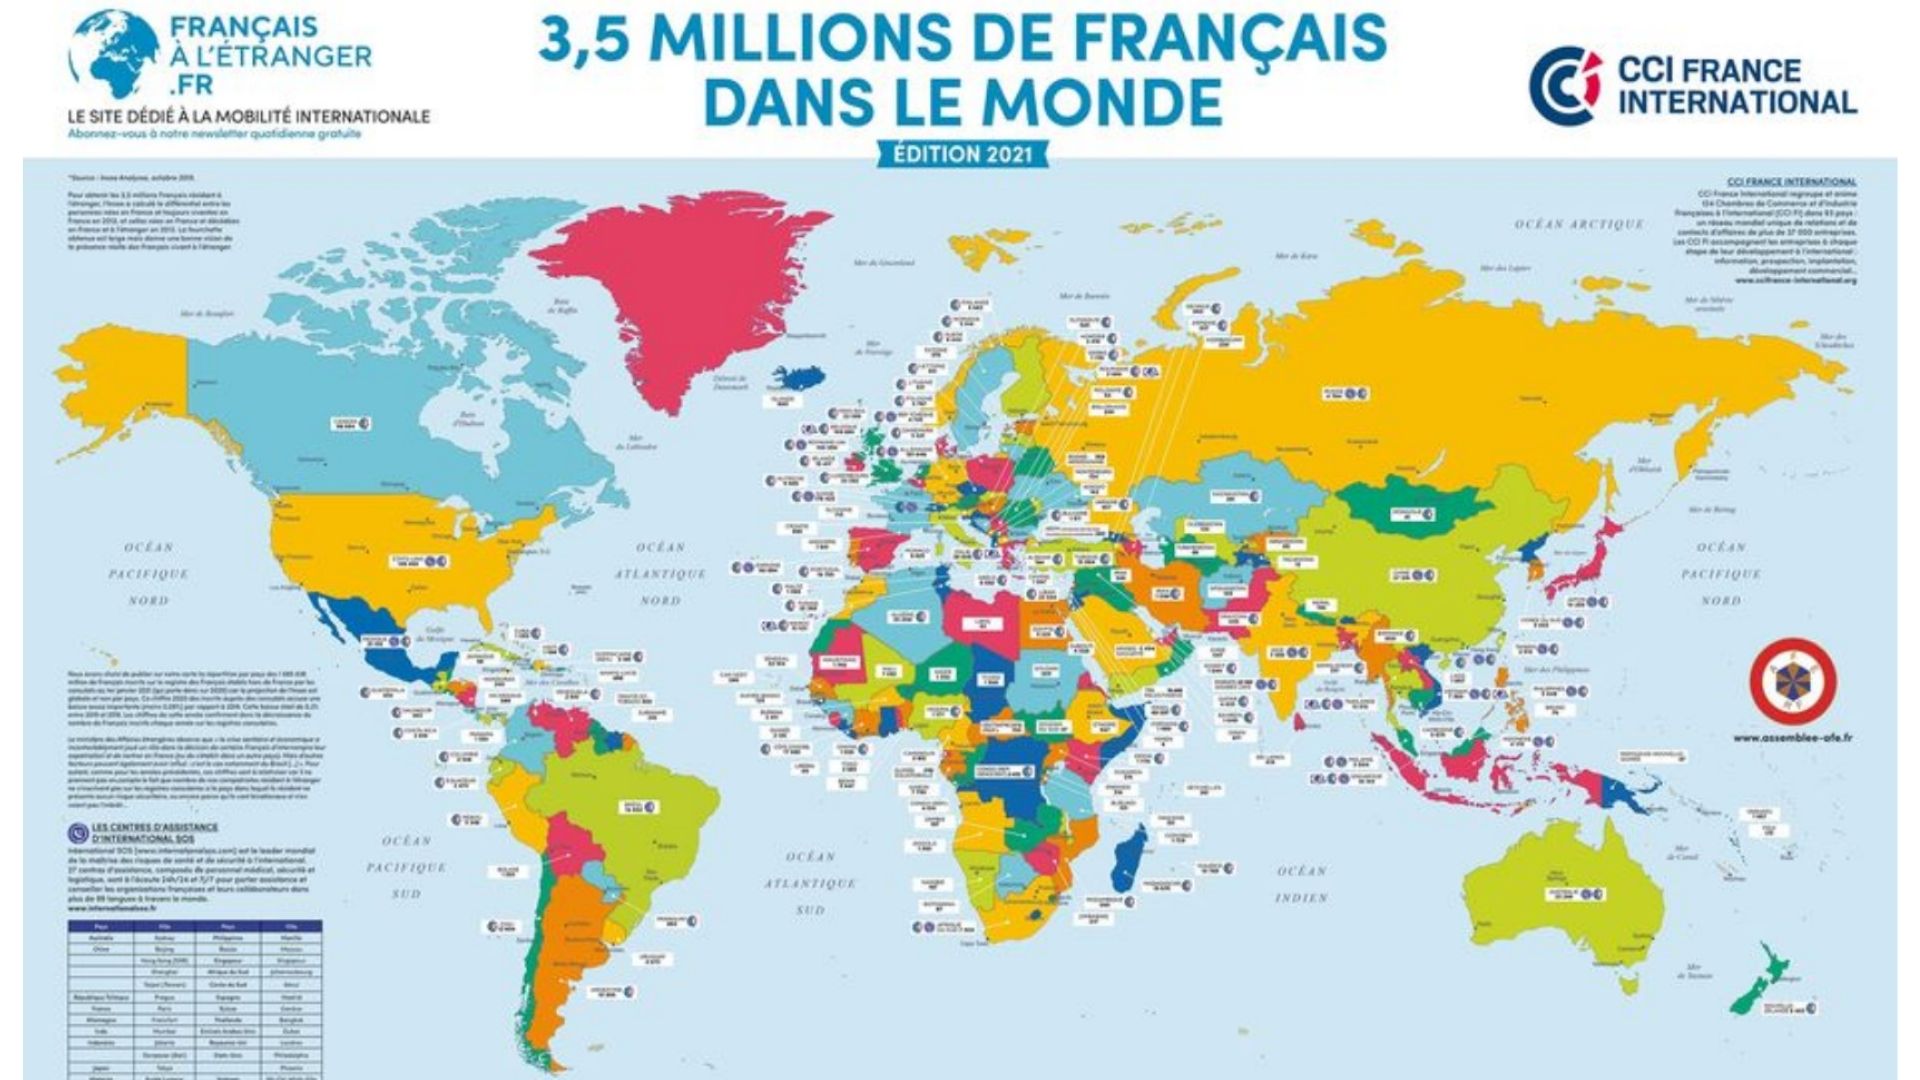 CCI France International : “le nombre de Français de l’étranger a toujours fait débat“